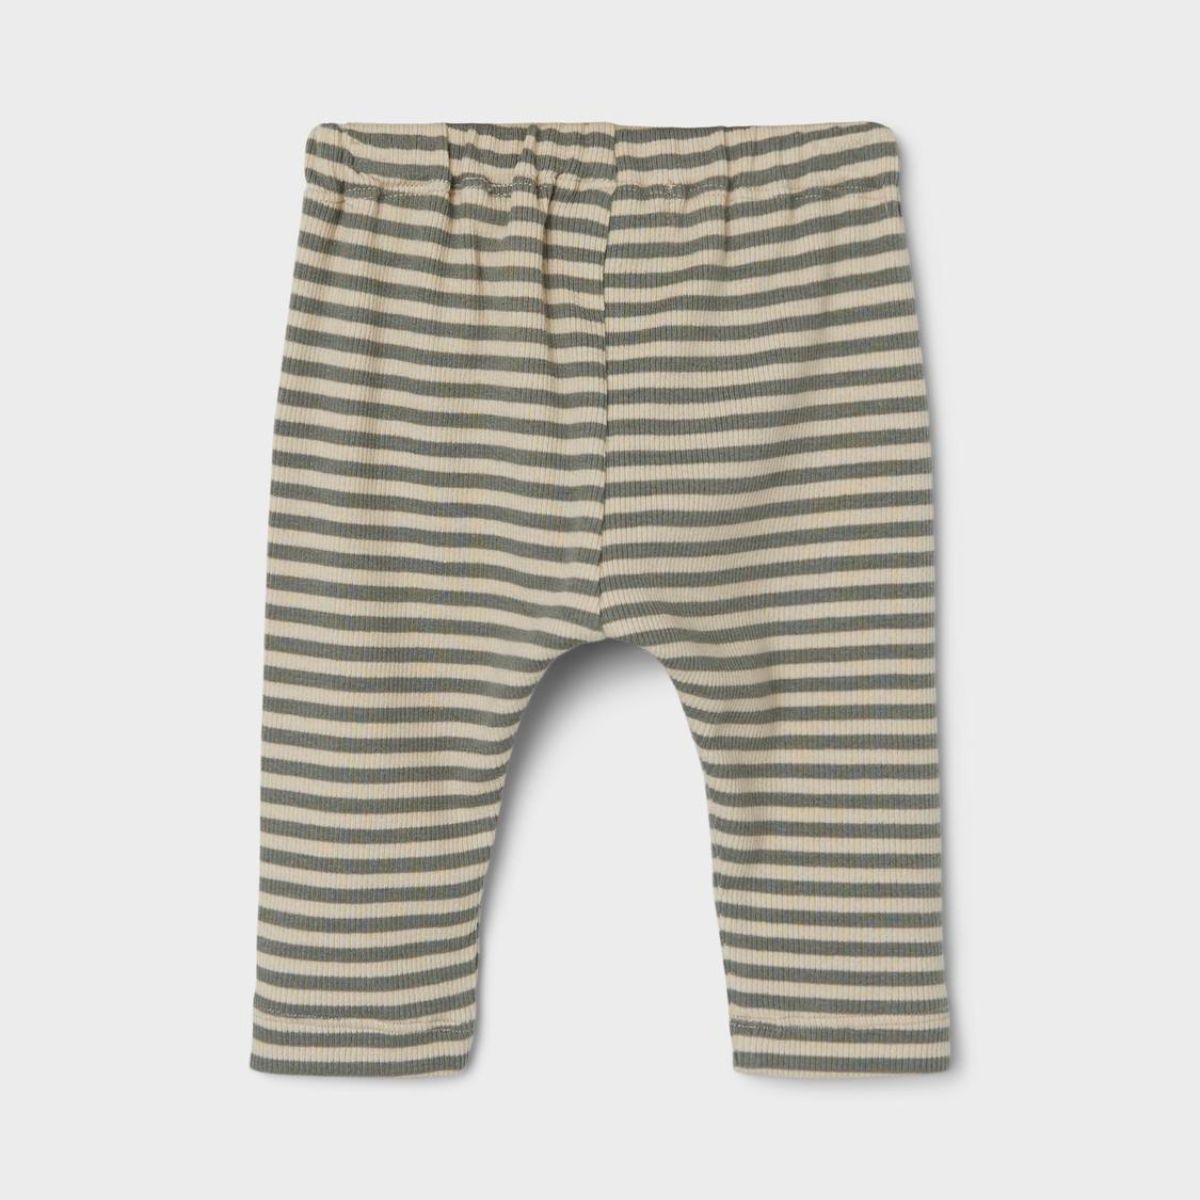 Deze soepelvallende broek in de uitvoering stripes fog van het vrolijke merk Lil' Atelier is ideaal voor je kleintje om lekker in te rennen, te spelen en te ravotten. Deze fijne broek biedt namelijk optimale bewegingsvrijheid en is lekker luchtig. VanZus